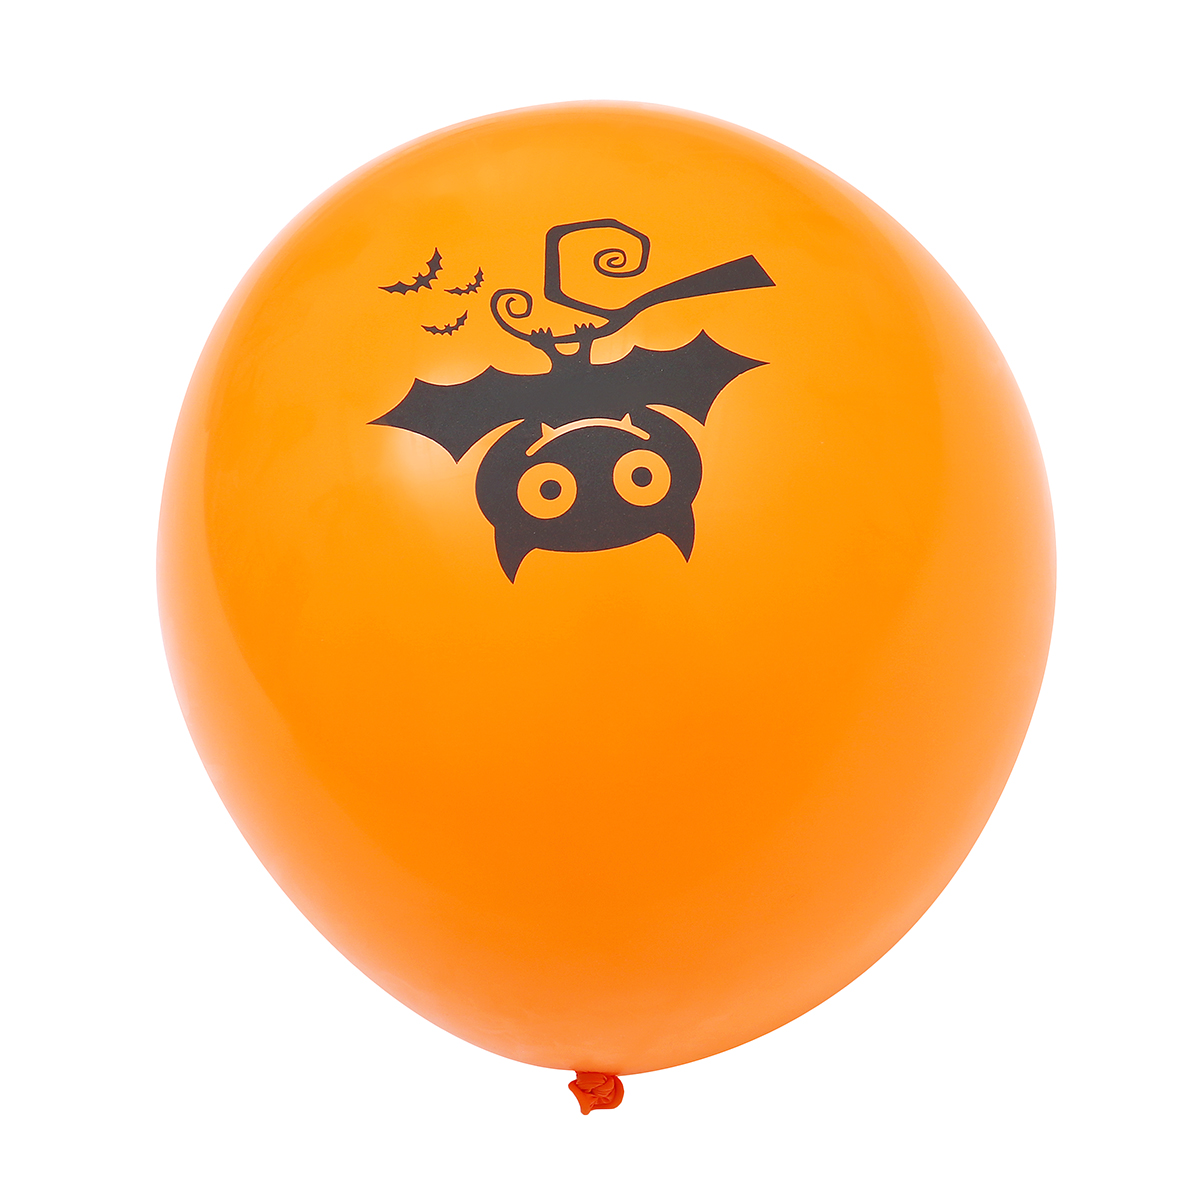 Halloween-Aluminum-Film-Balloon-Cartoon-Style-Spider-Ghost-Bat-Balloon-Ghost-Festival-Happy-Hallowee-1815611-9